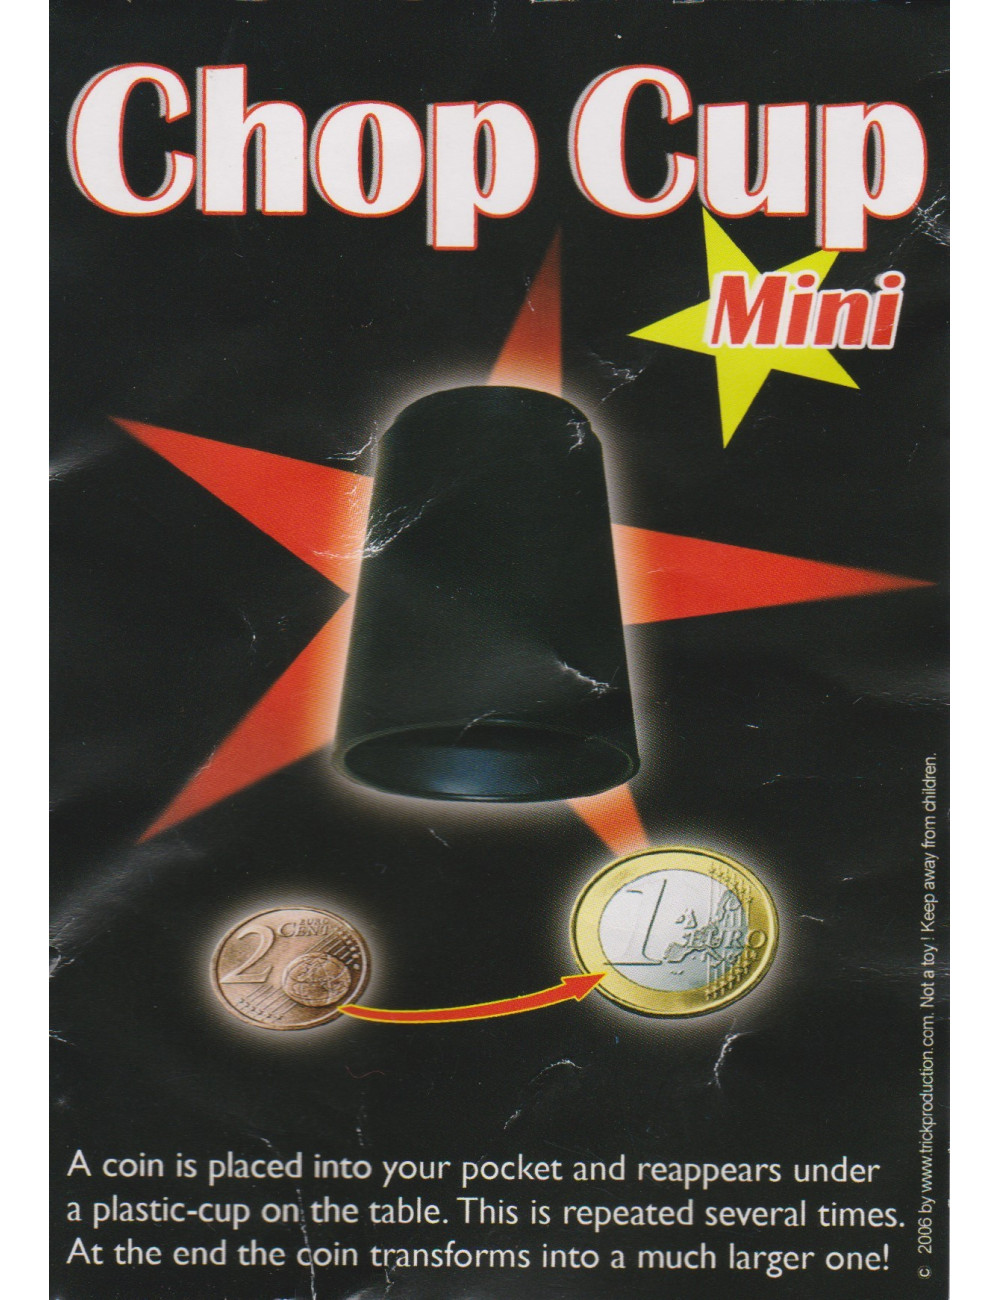 MINI CHOP CUP